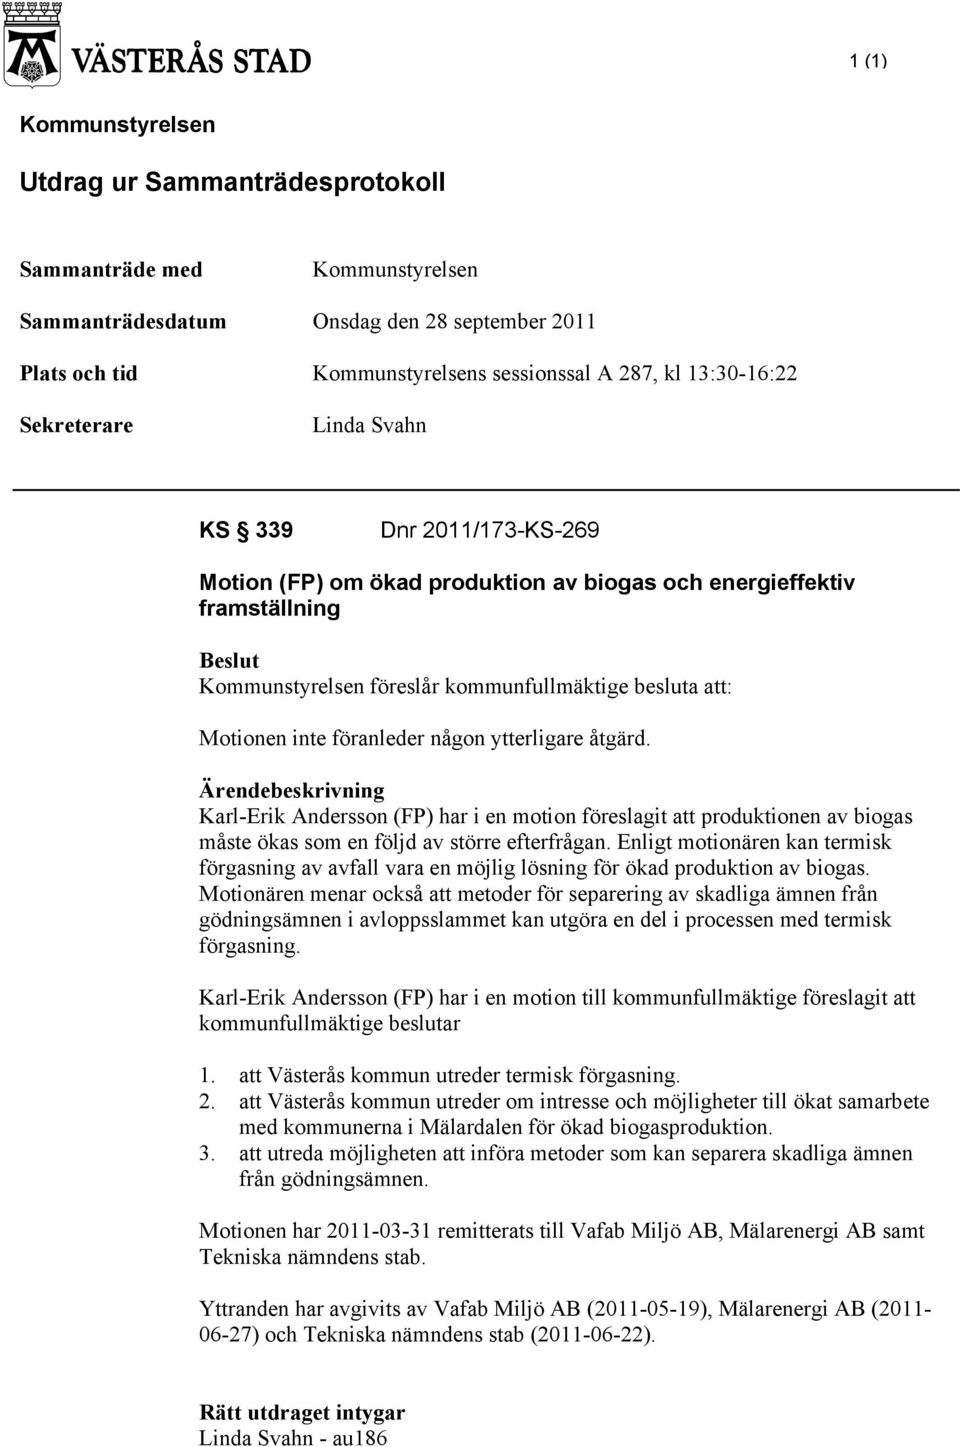 inte föranleder någon ytterligare åtgärd. Ärendebeskrivning Karl-Erik Andersson (FP) har i en motion föreslagit att produktionen av biogas måste ökas som en följd av större efterfrågan.